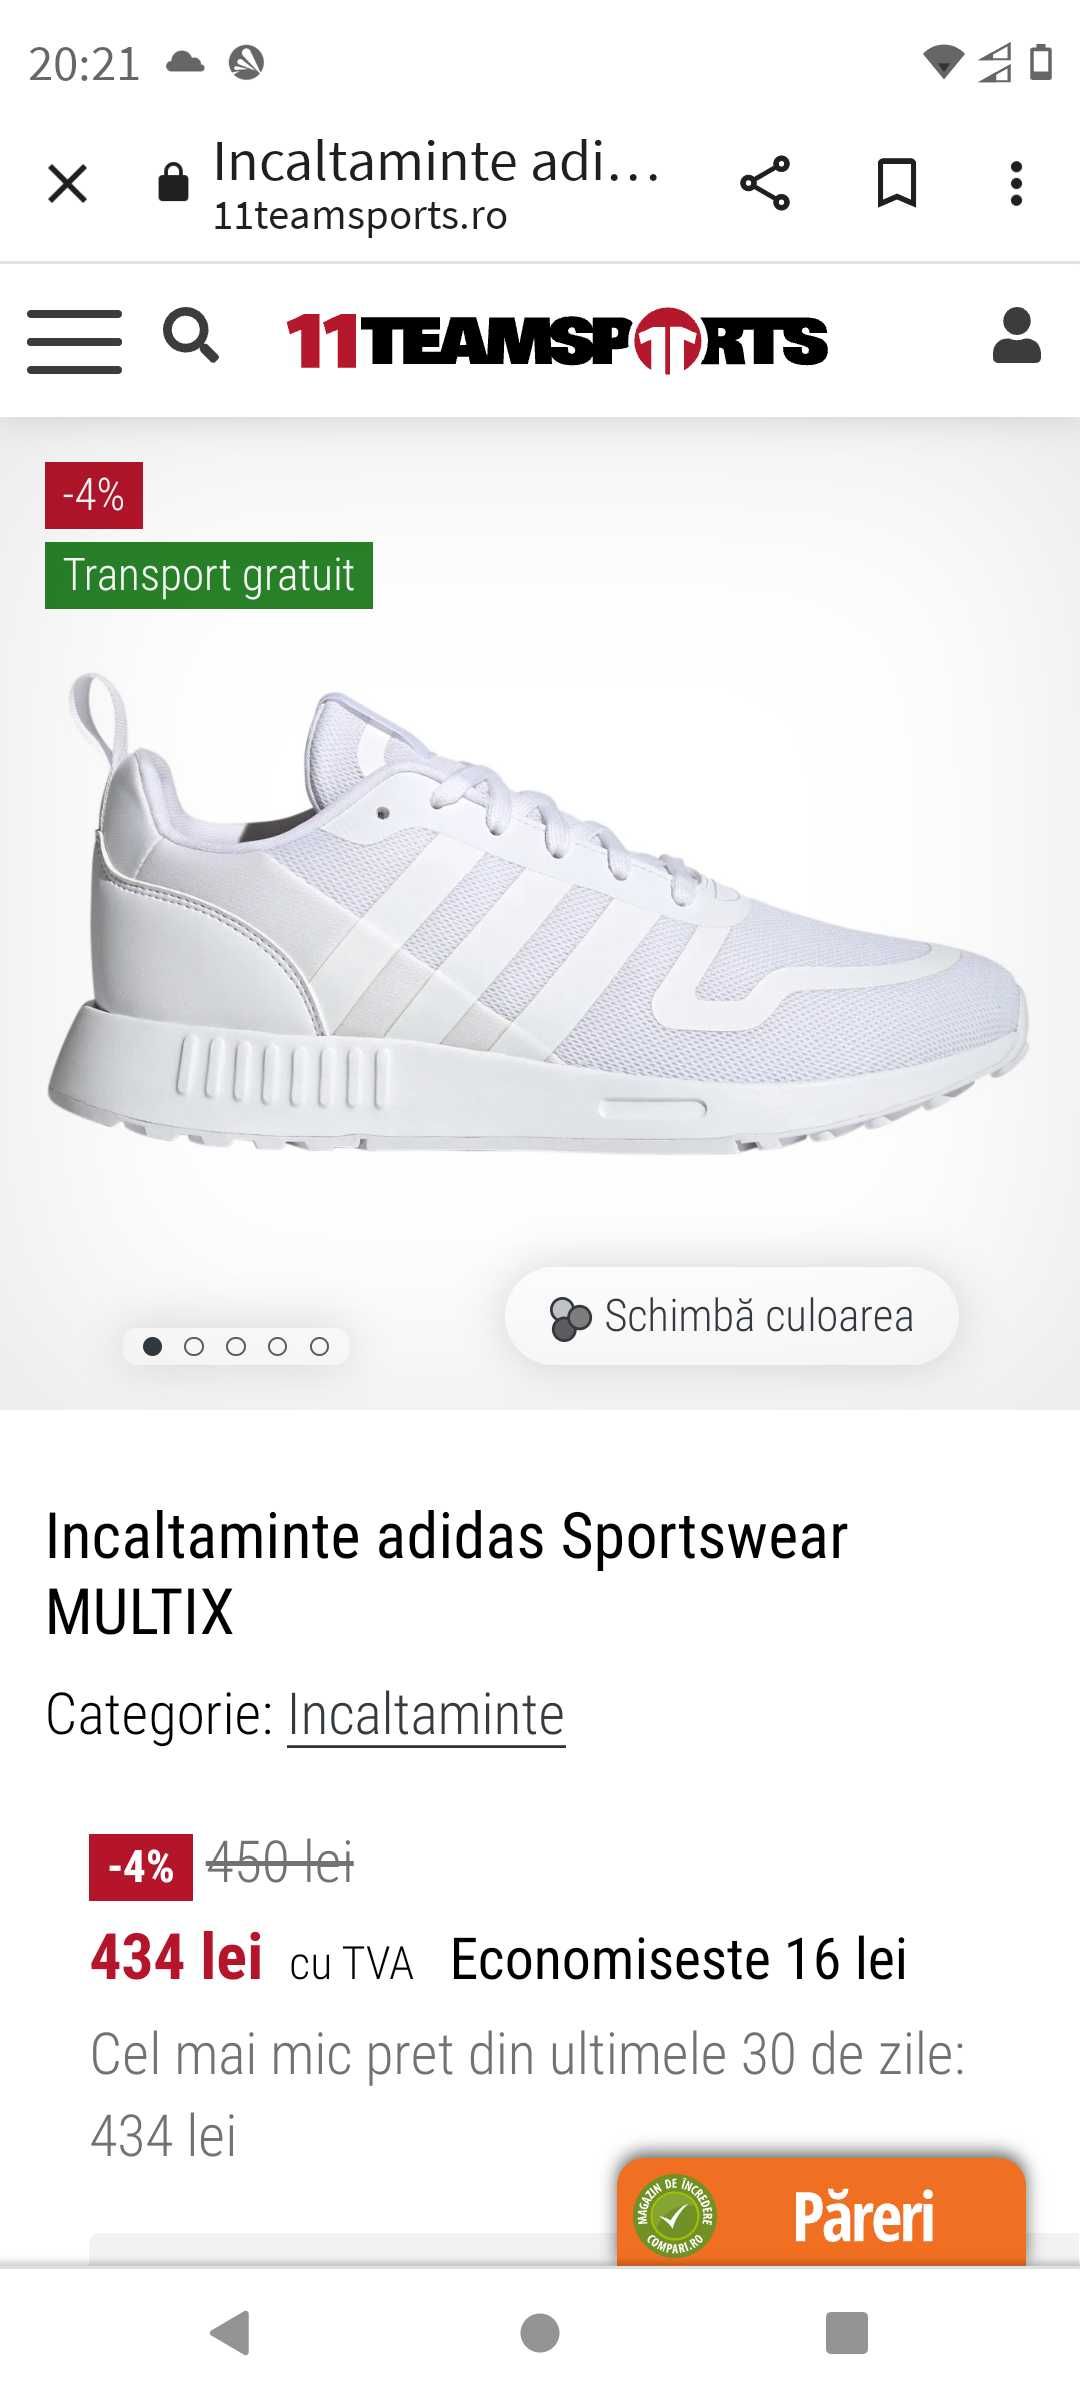 Vând adidași Adidas multix albi, noi cu eticheta și cutia lor.